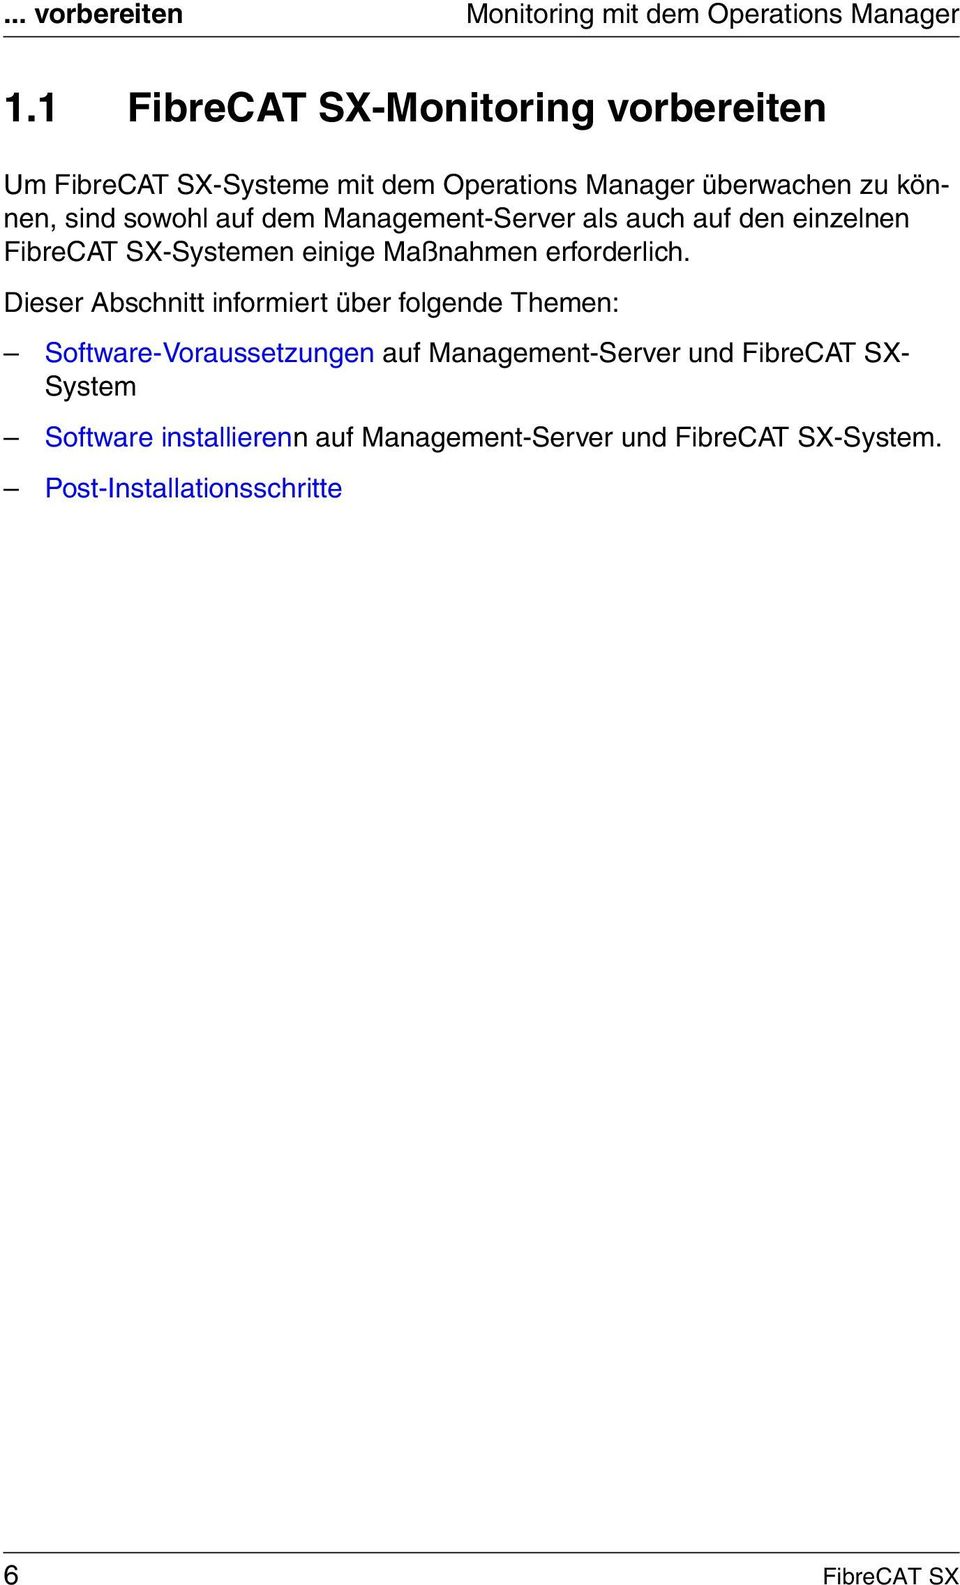 dem Management-Server als auch auf den einzelnen FibreCAT SX-Systemen einige Maßnahmen erforderlich.